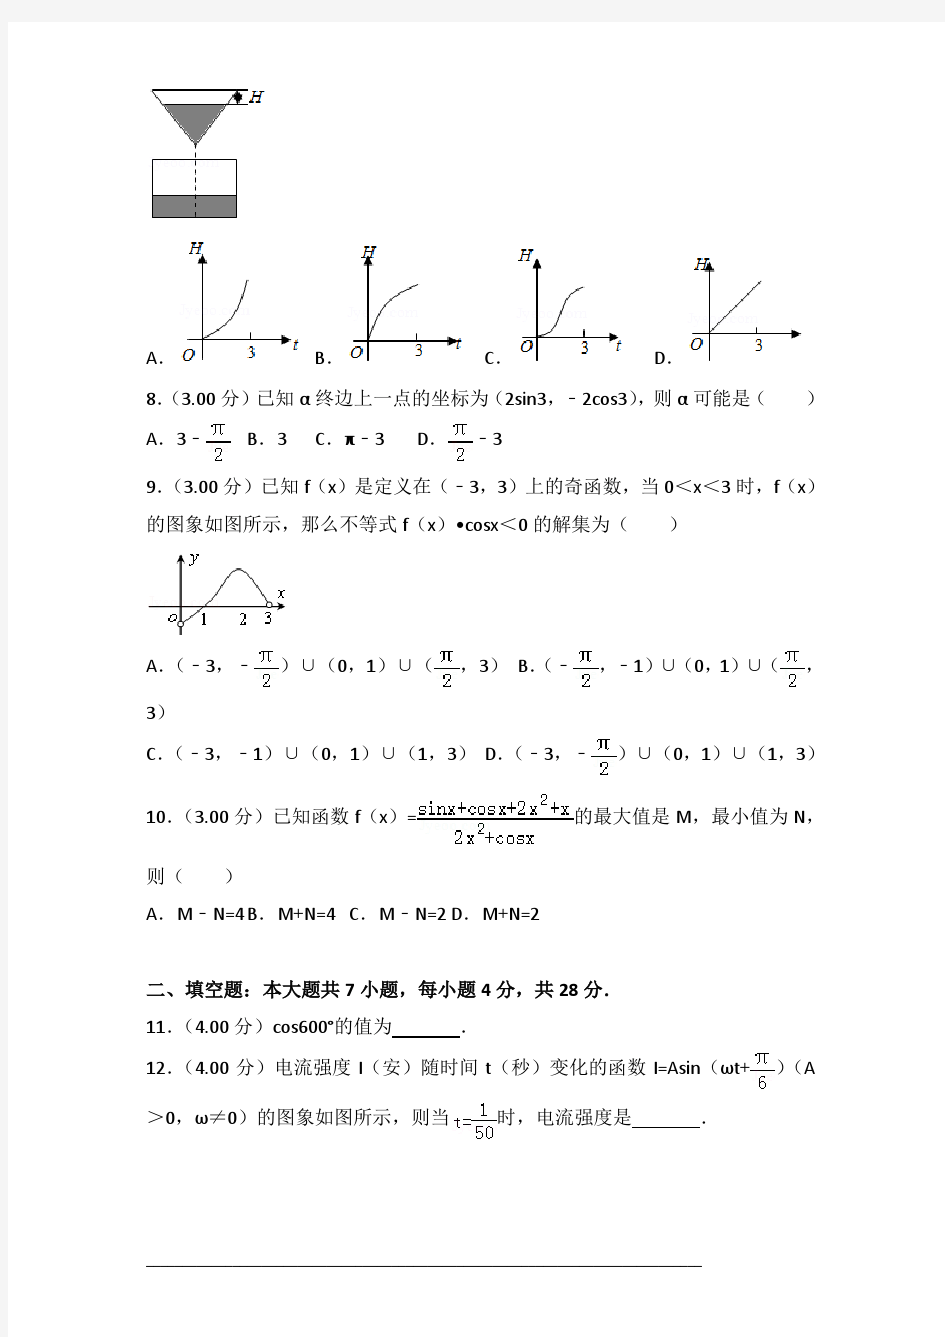 2013-2014年浙江省杭州二中高一(上)数学期末试卷及答案PDF